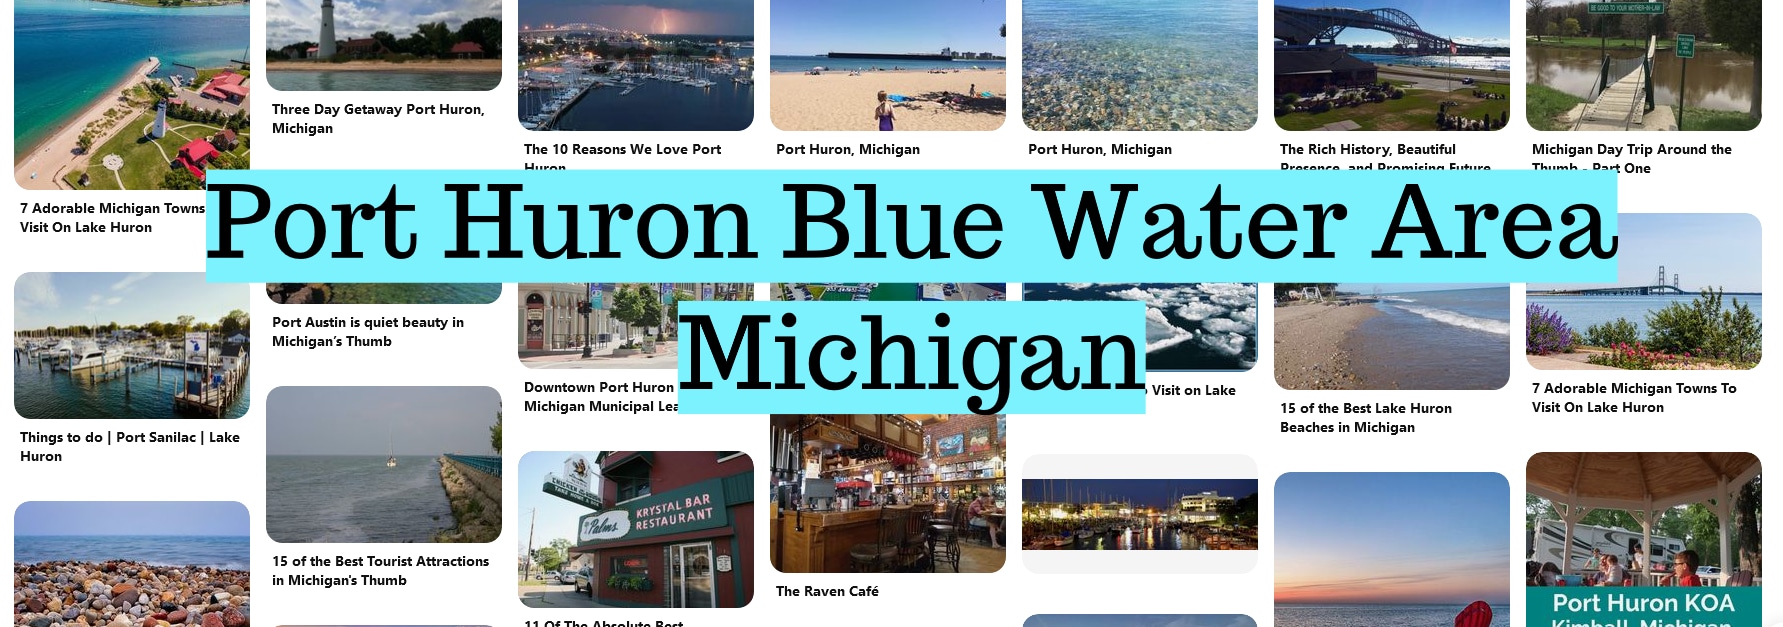 Port Huron Blue Water Area Michigan